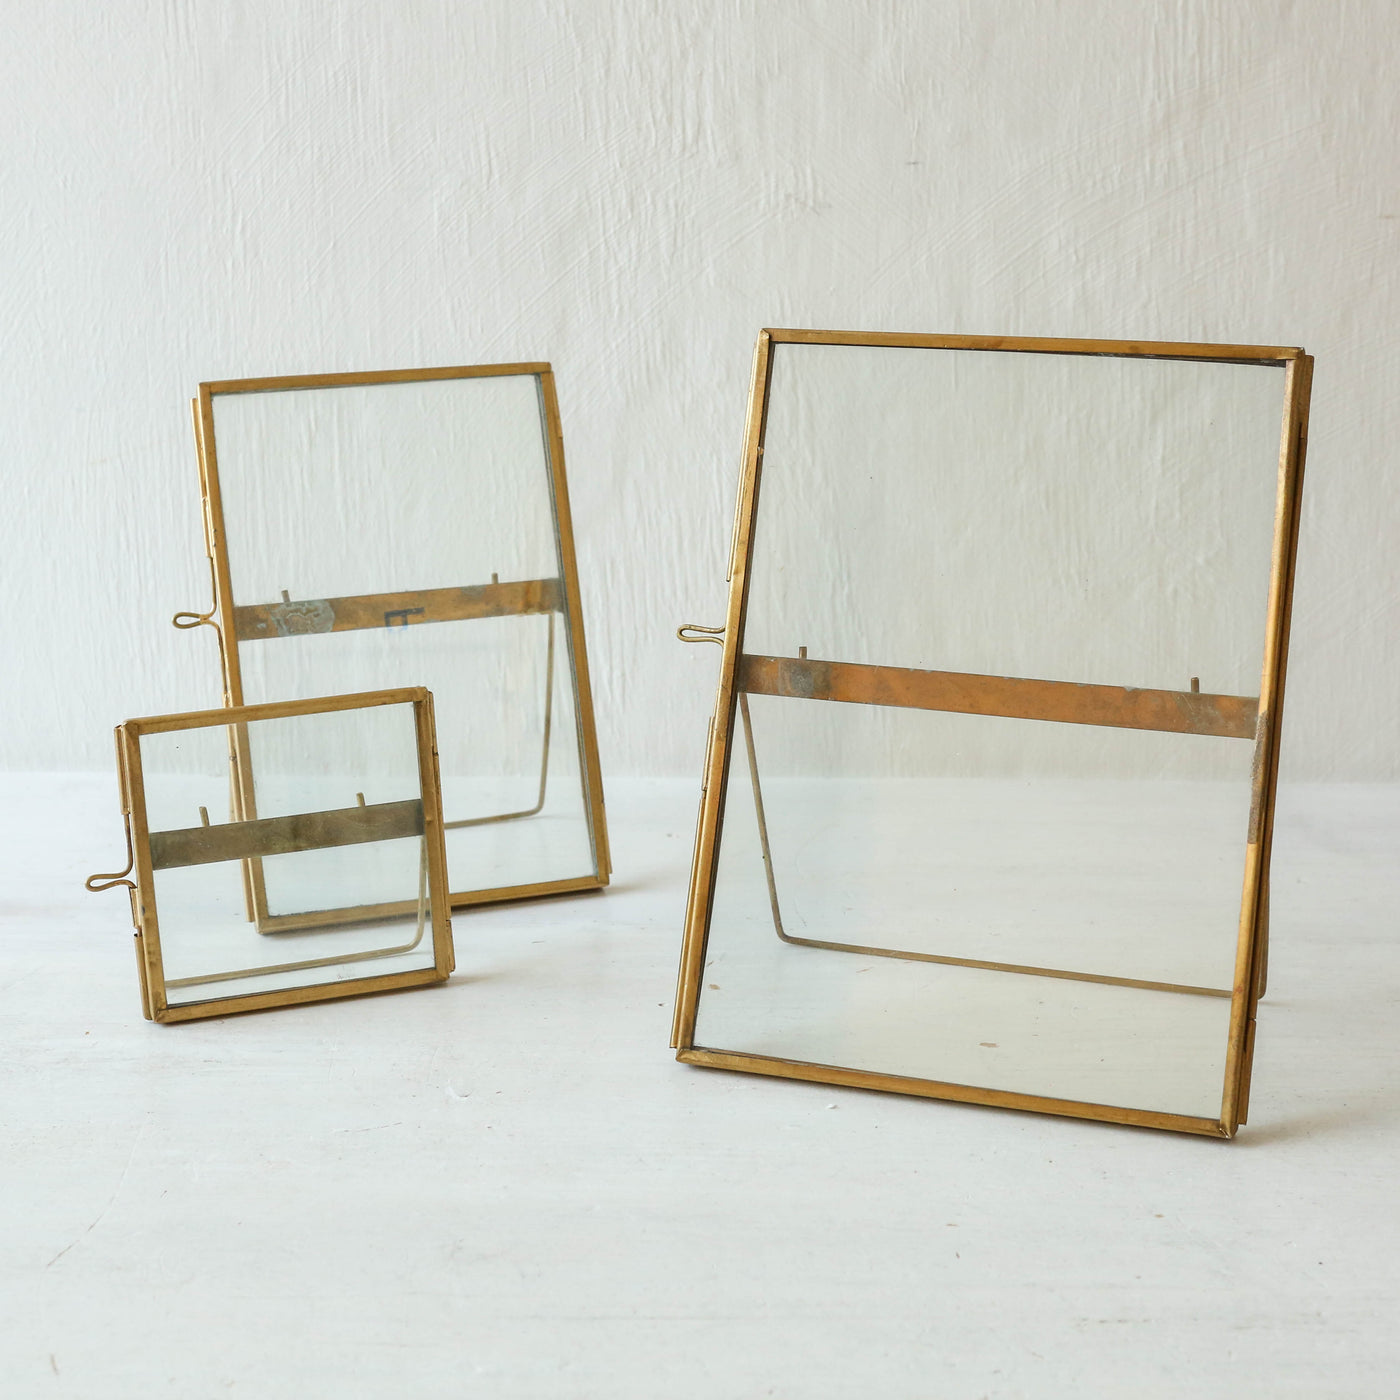 Standing Brass Frame 10 x 15cm